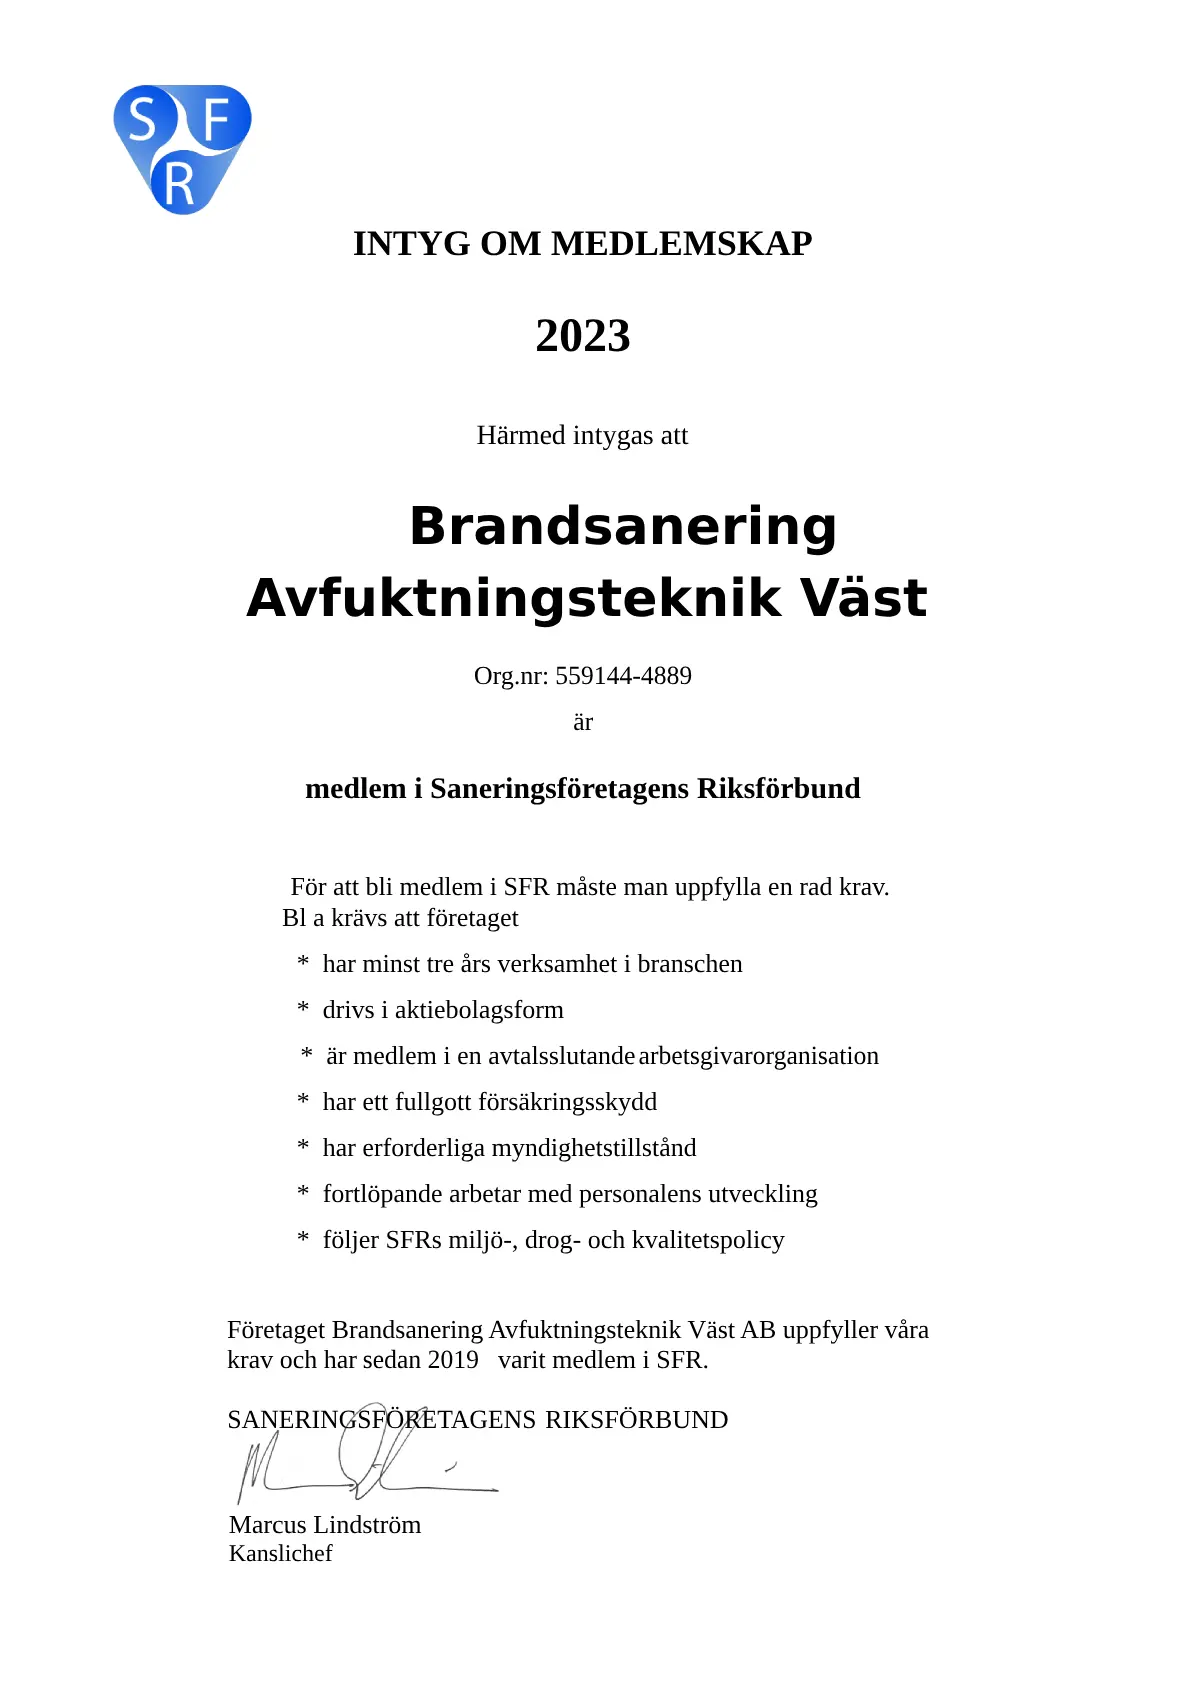 Brandsanering Avfukt Väst AB 2023-pdf